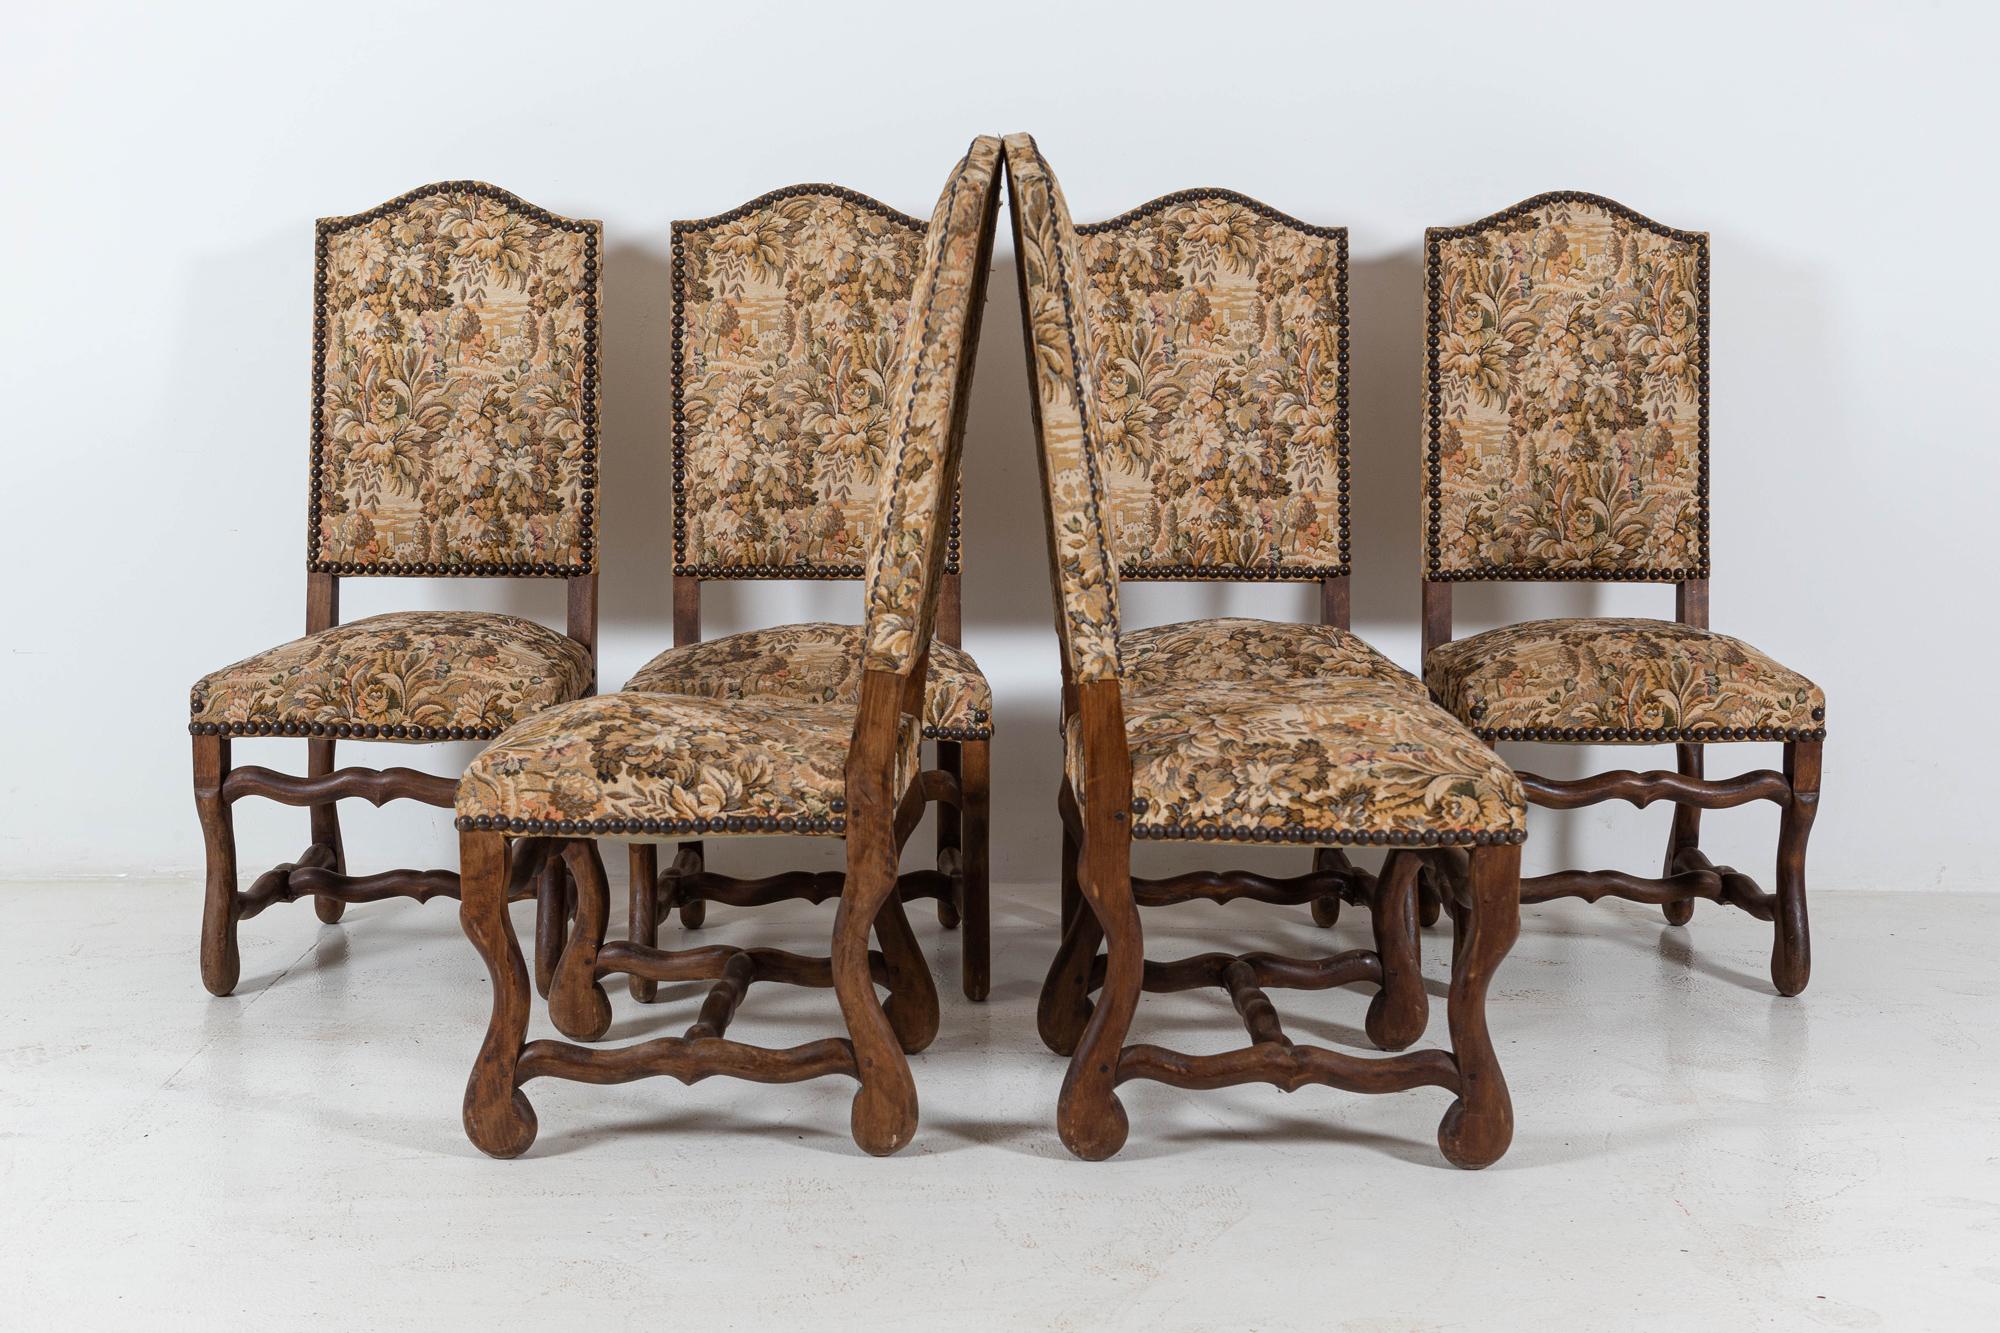 CIRCA 1900

Satz von 6 Os De Mouton Buche Gobelin Stühle in Originalzustand gesourced

Aus Südfrankreich stammend

Maße: B 48 x T 48 x H 113 cm.

 